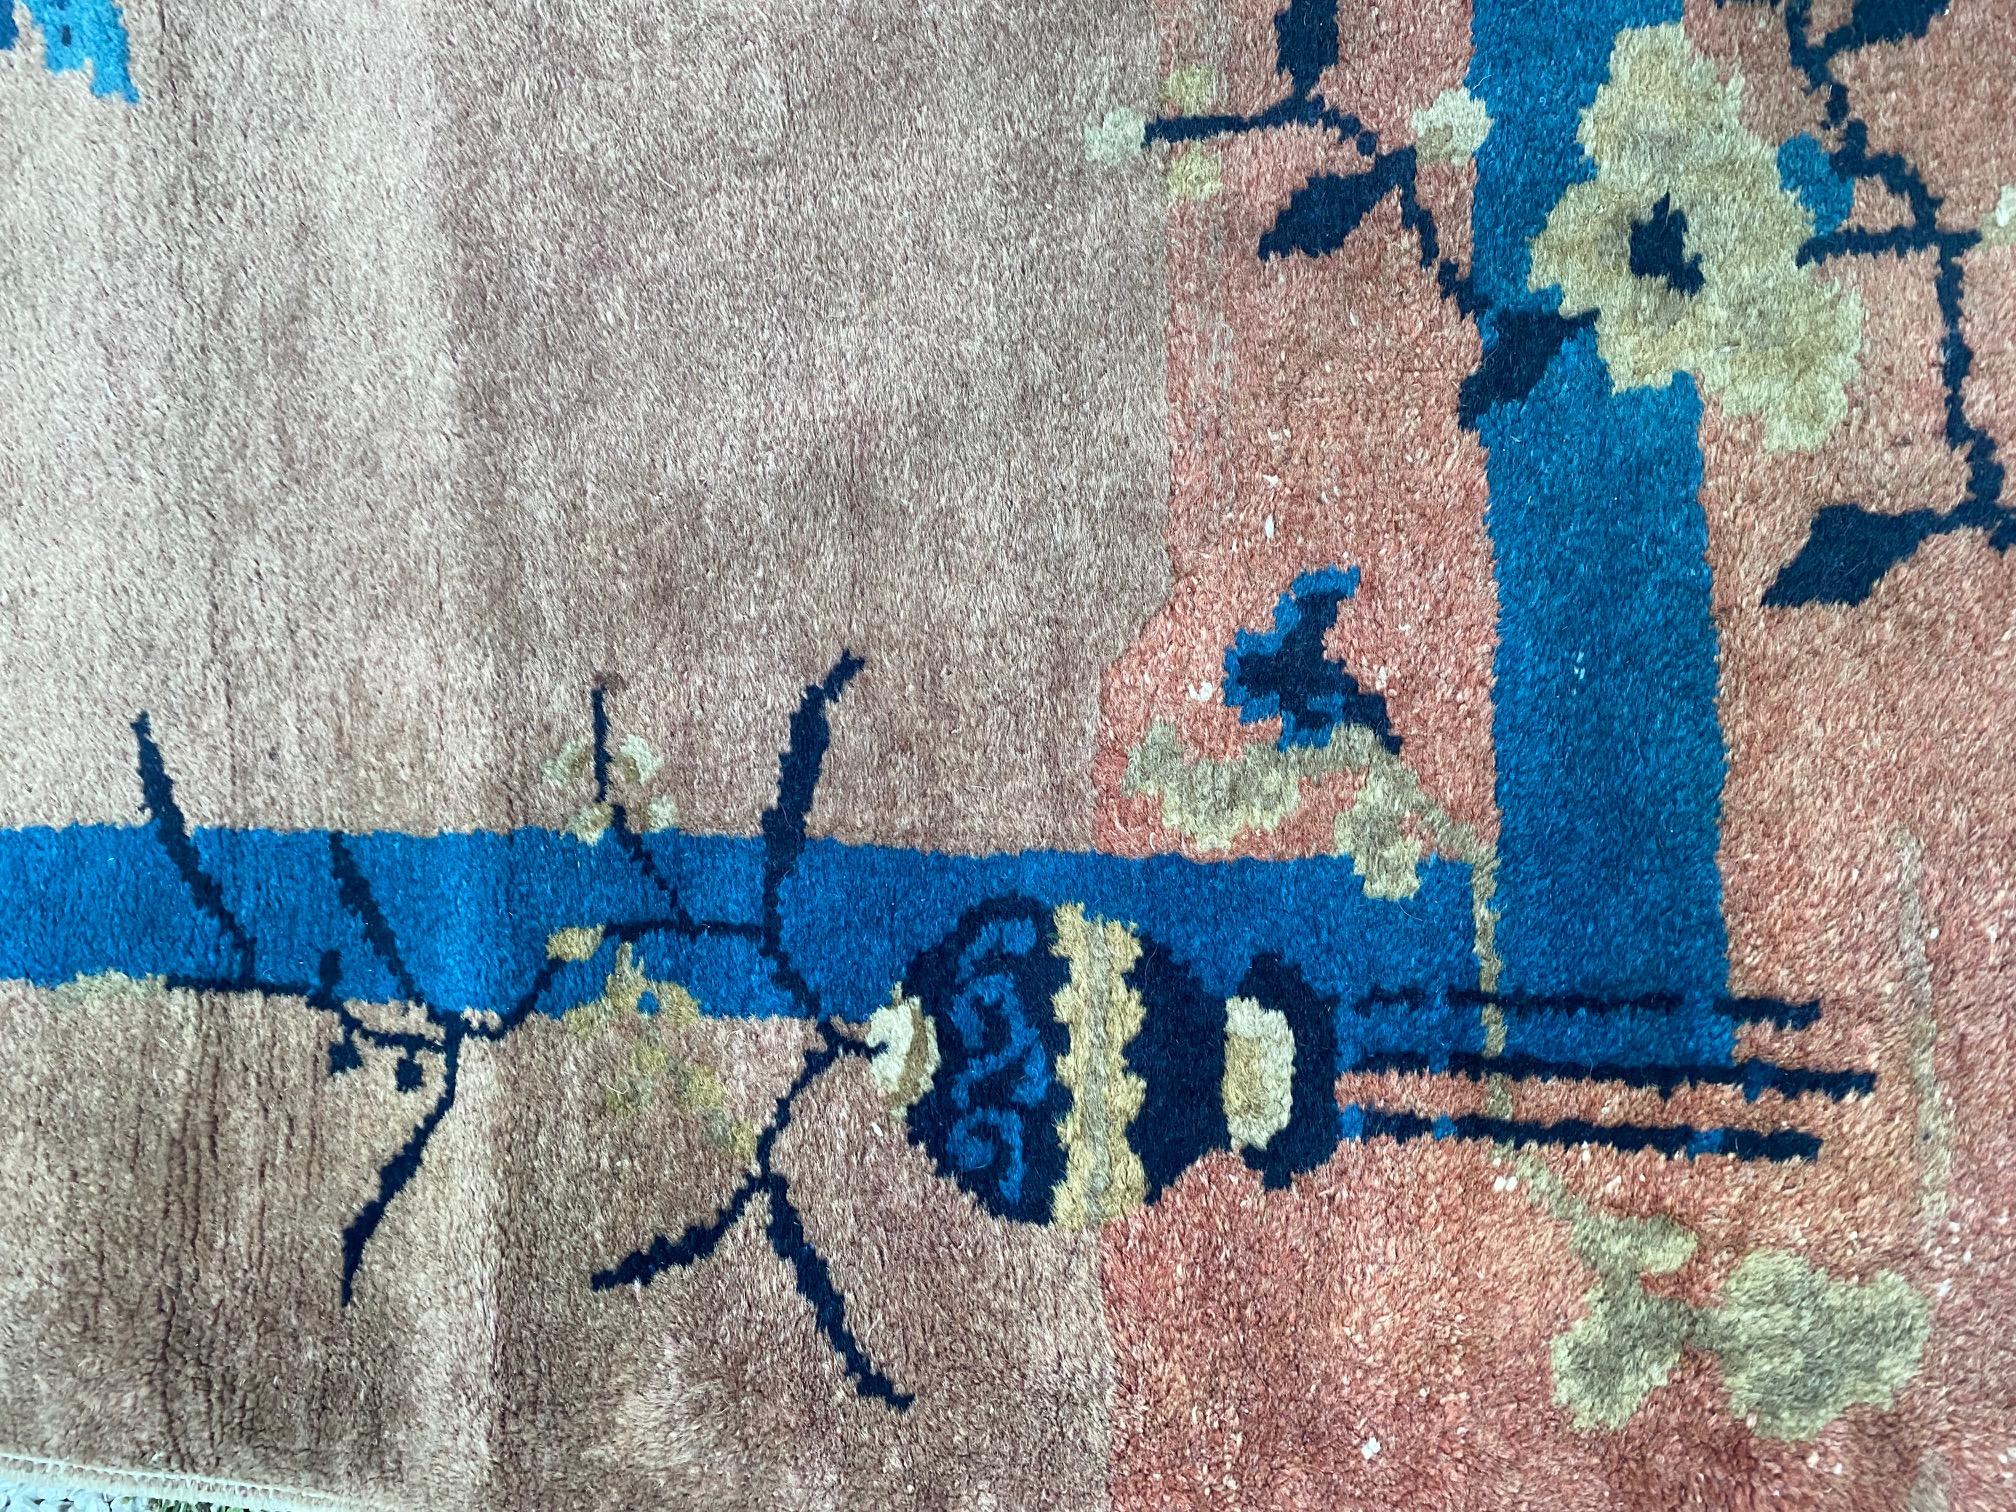 Tapis de dispersion Art déco chinois ancien, vers 1920, un tapis en laine noué à la main présentant des brins floraux bleu ciel et cobalt sur un fond saumon foncé. En parfait état.

Mesures : 3 ft x 5 ft.